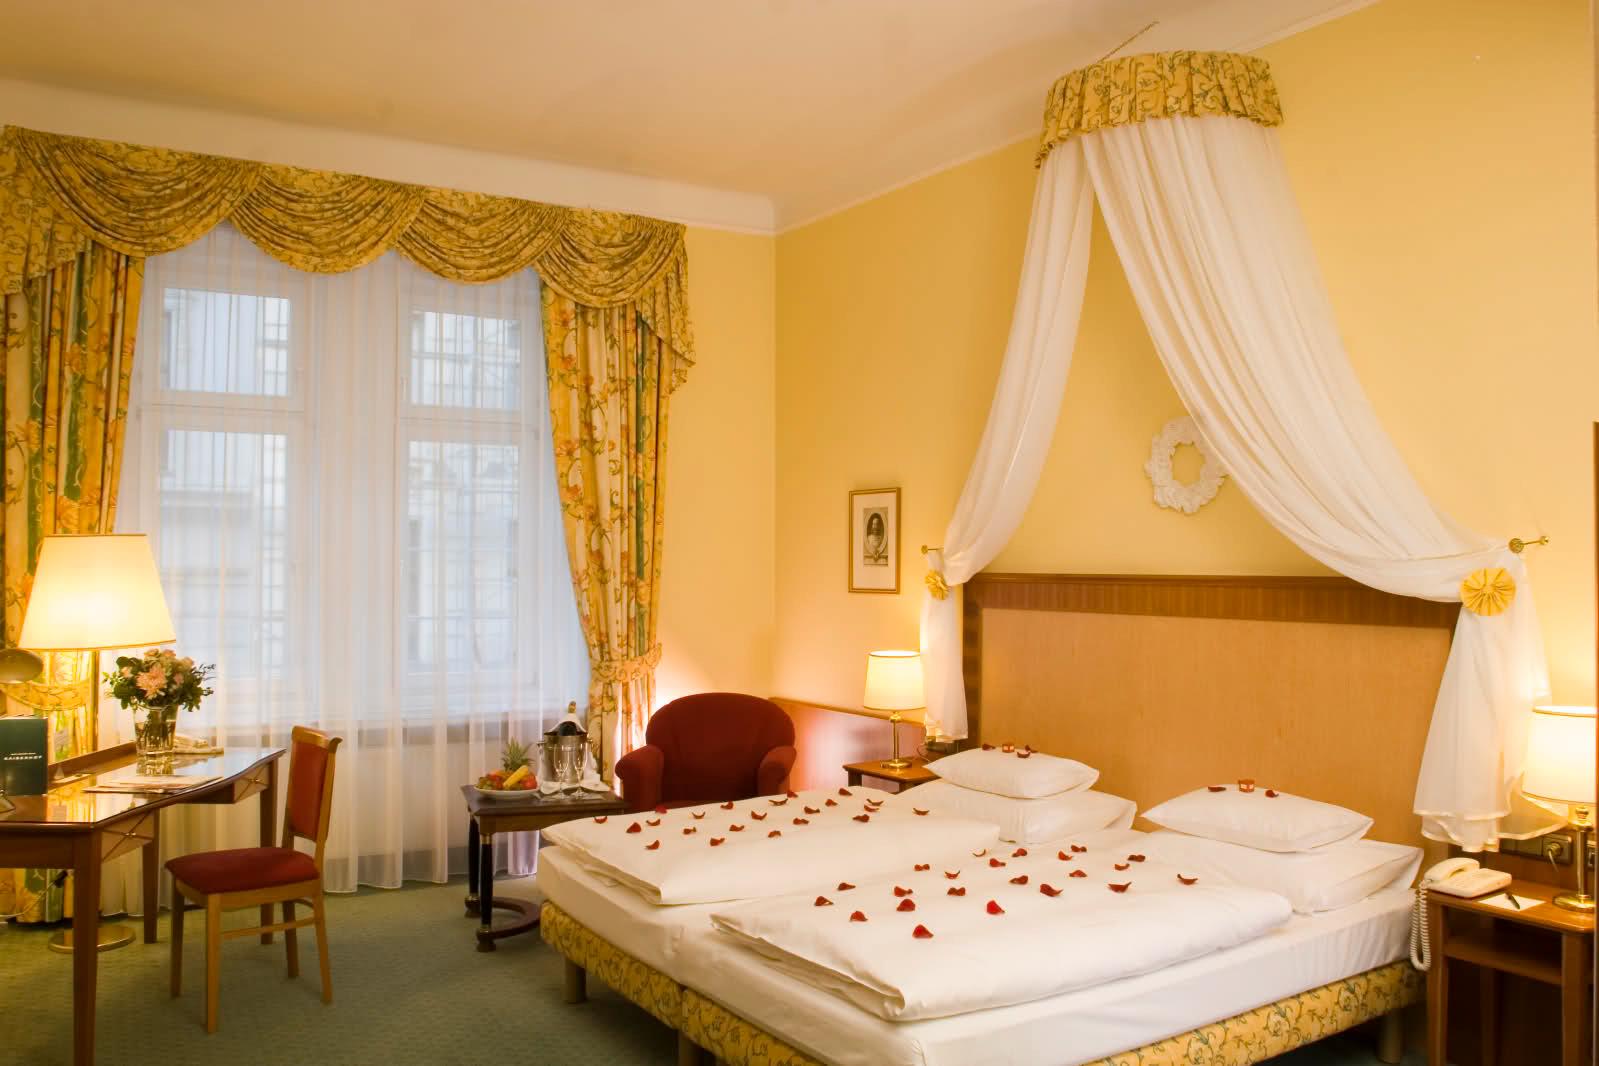 Hotel Kaiserhof ligger mitt i Wien. Under hela februari har hotellet ett “Varje dag är Alla hjärtans dag”-program med allt från frukost på sängen till bastubad och middag med levande ljus och rosenbeströdda dukar. Romantiskt värre!